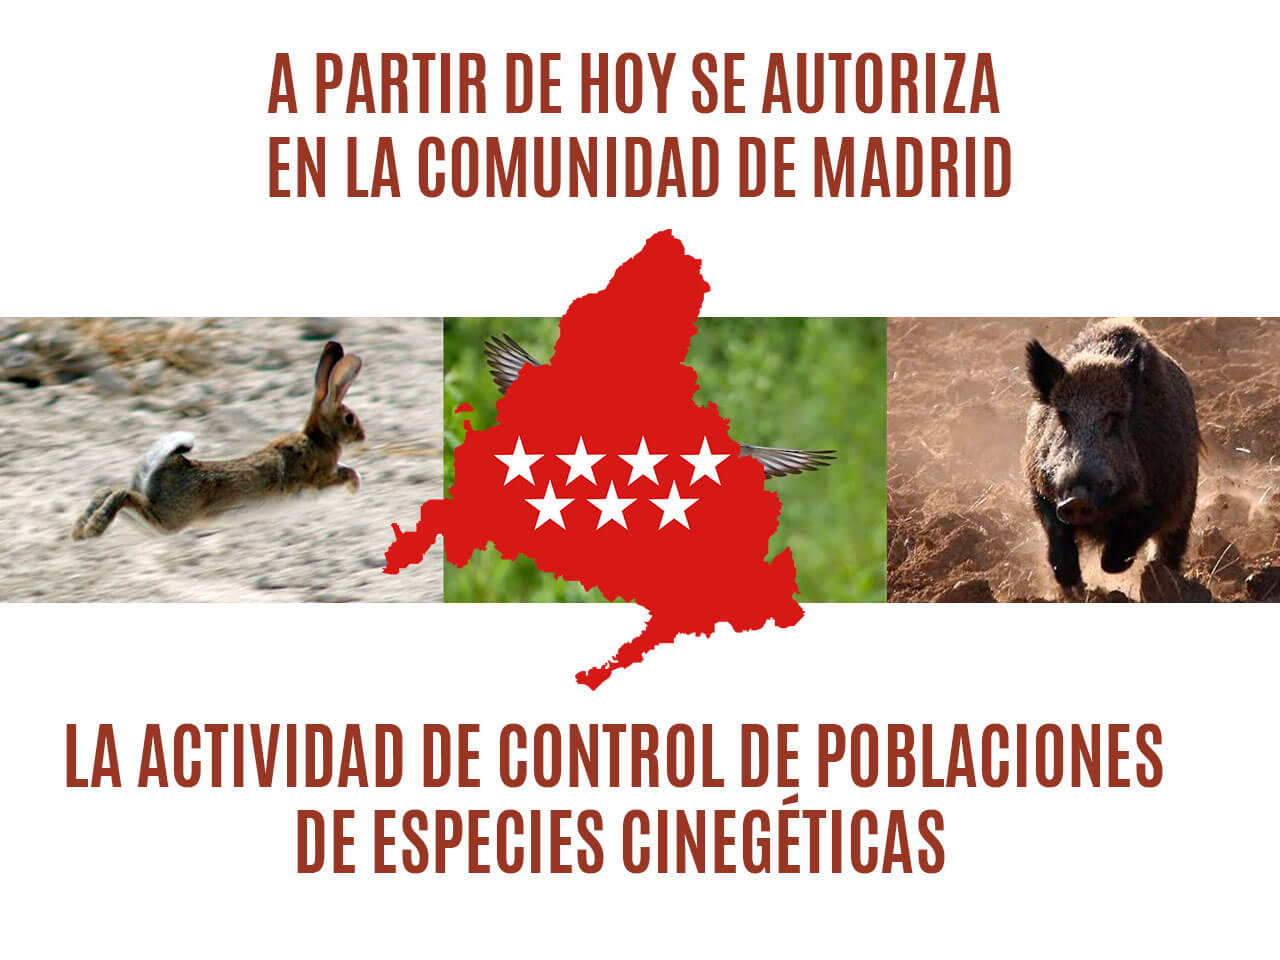 Autorizada la actividad de control de poblaciones de especies cinegéticas en la Comunidad de Madrid